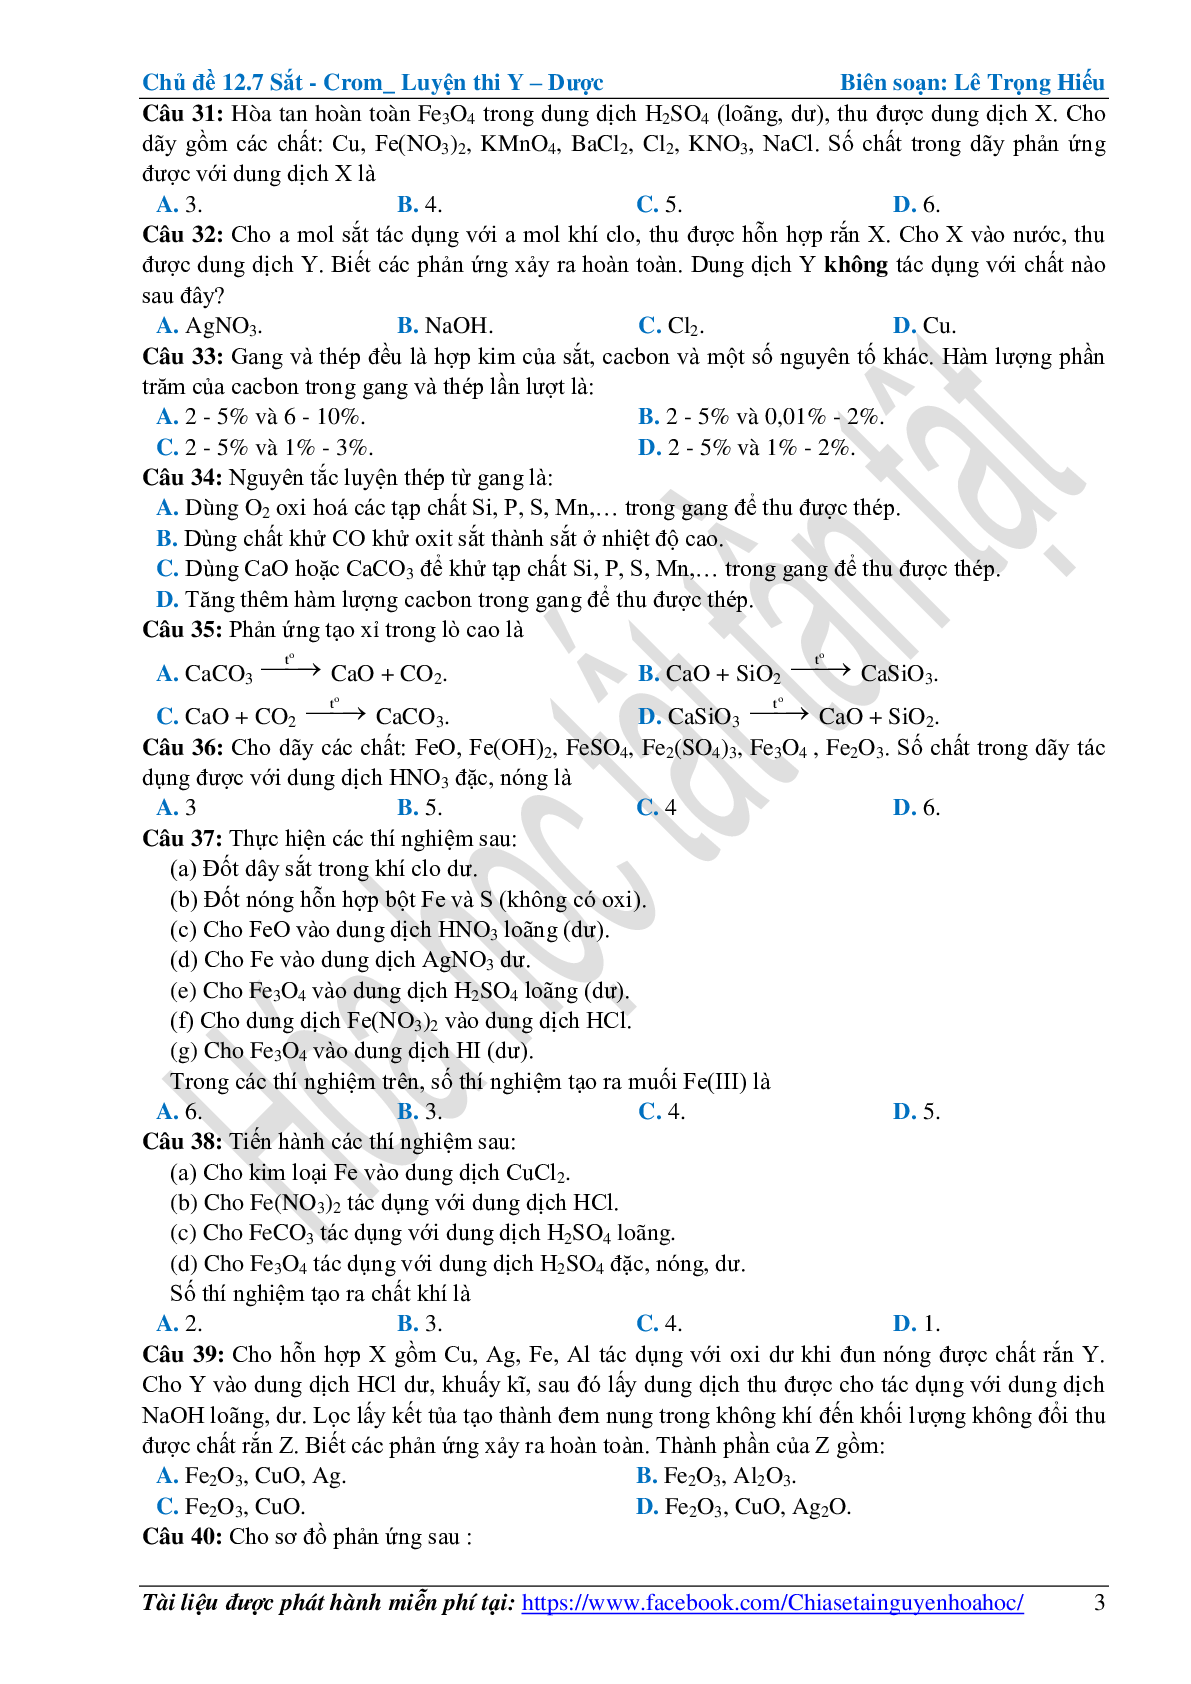 Bài tập về sắt-crom cơ bản, nâng cao (trang 3)